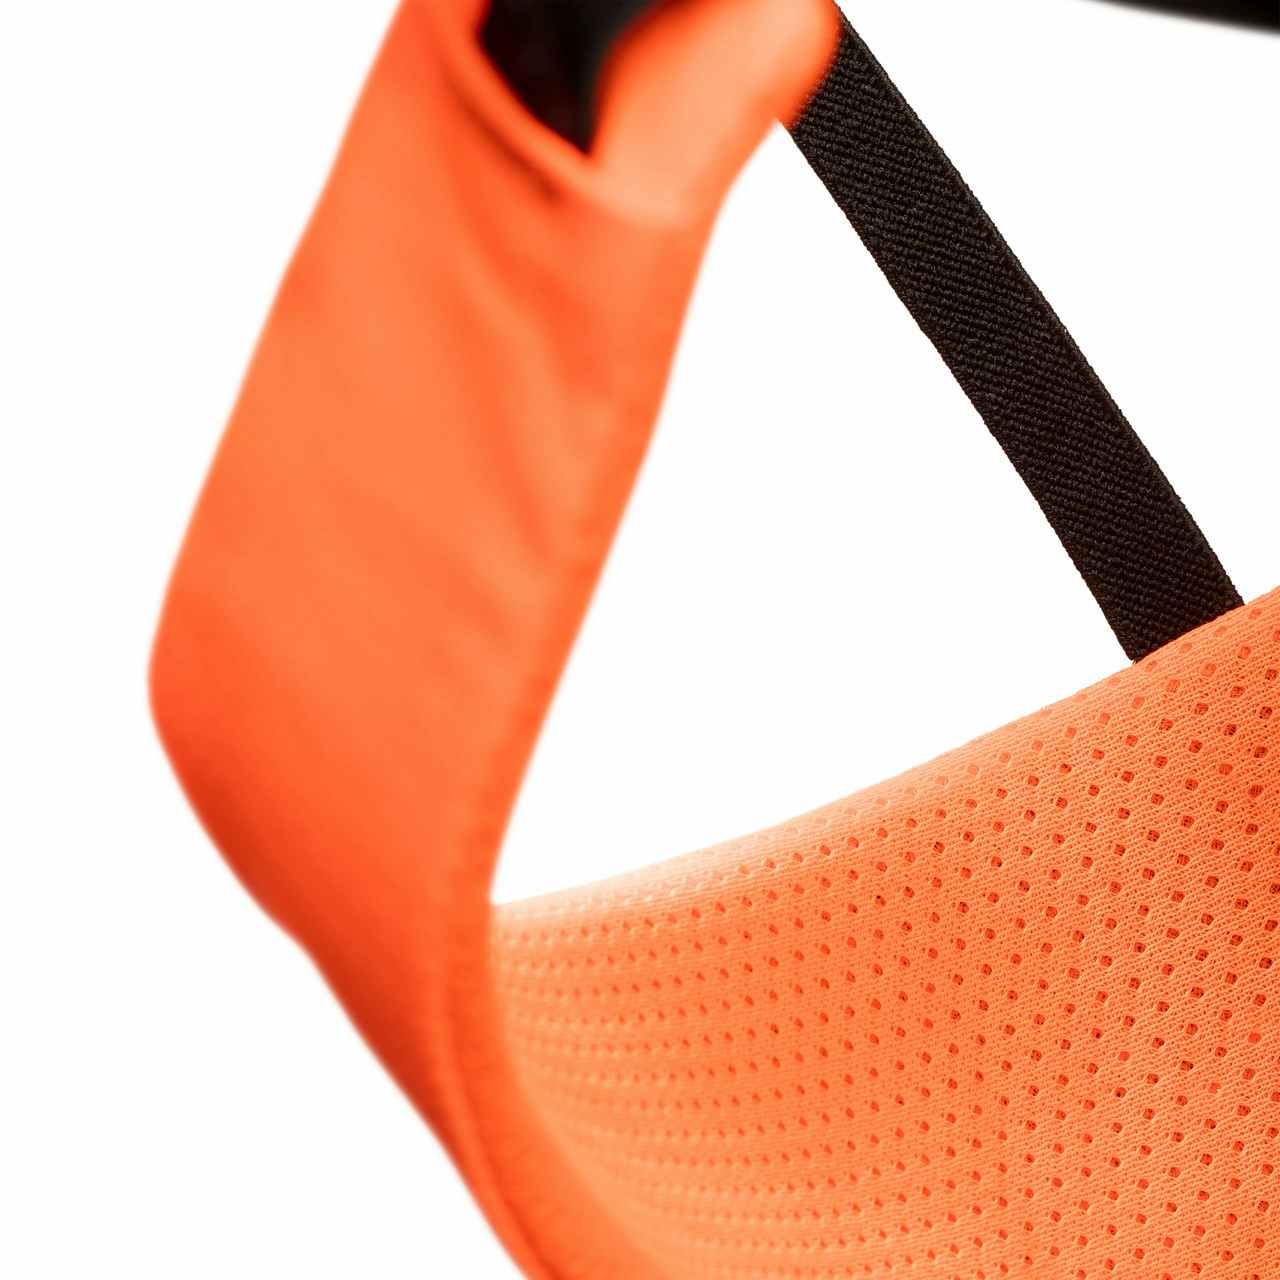 Sender Harness Safety Orange